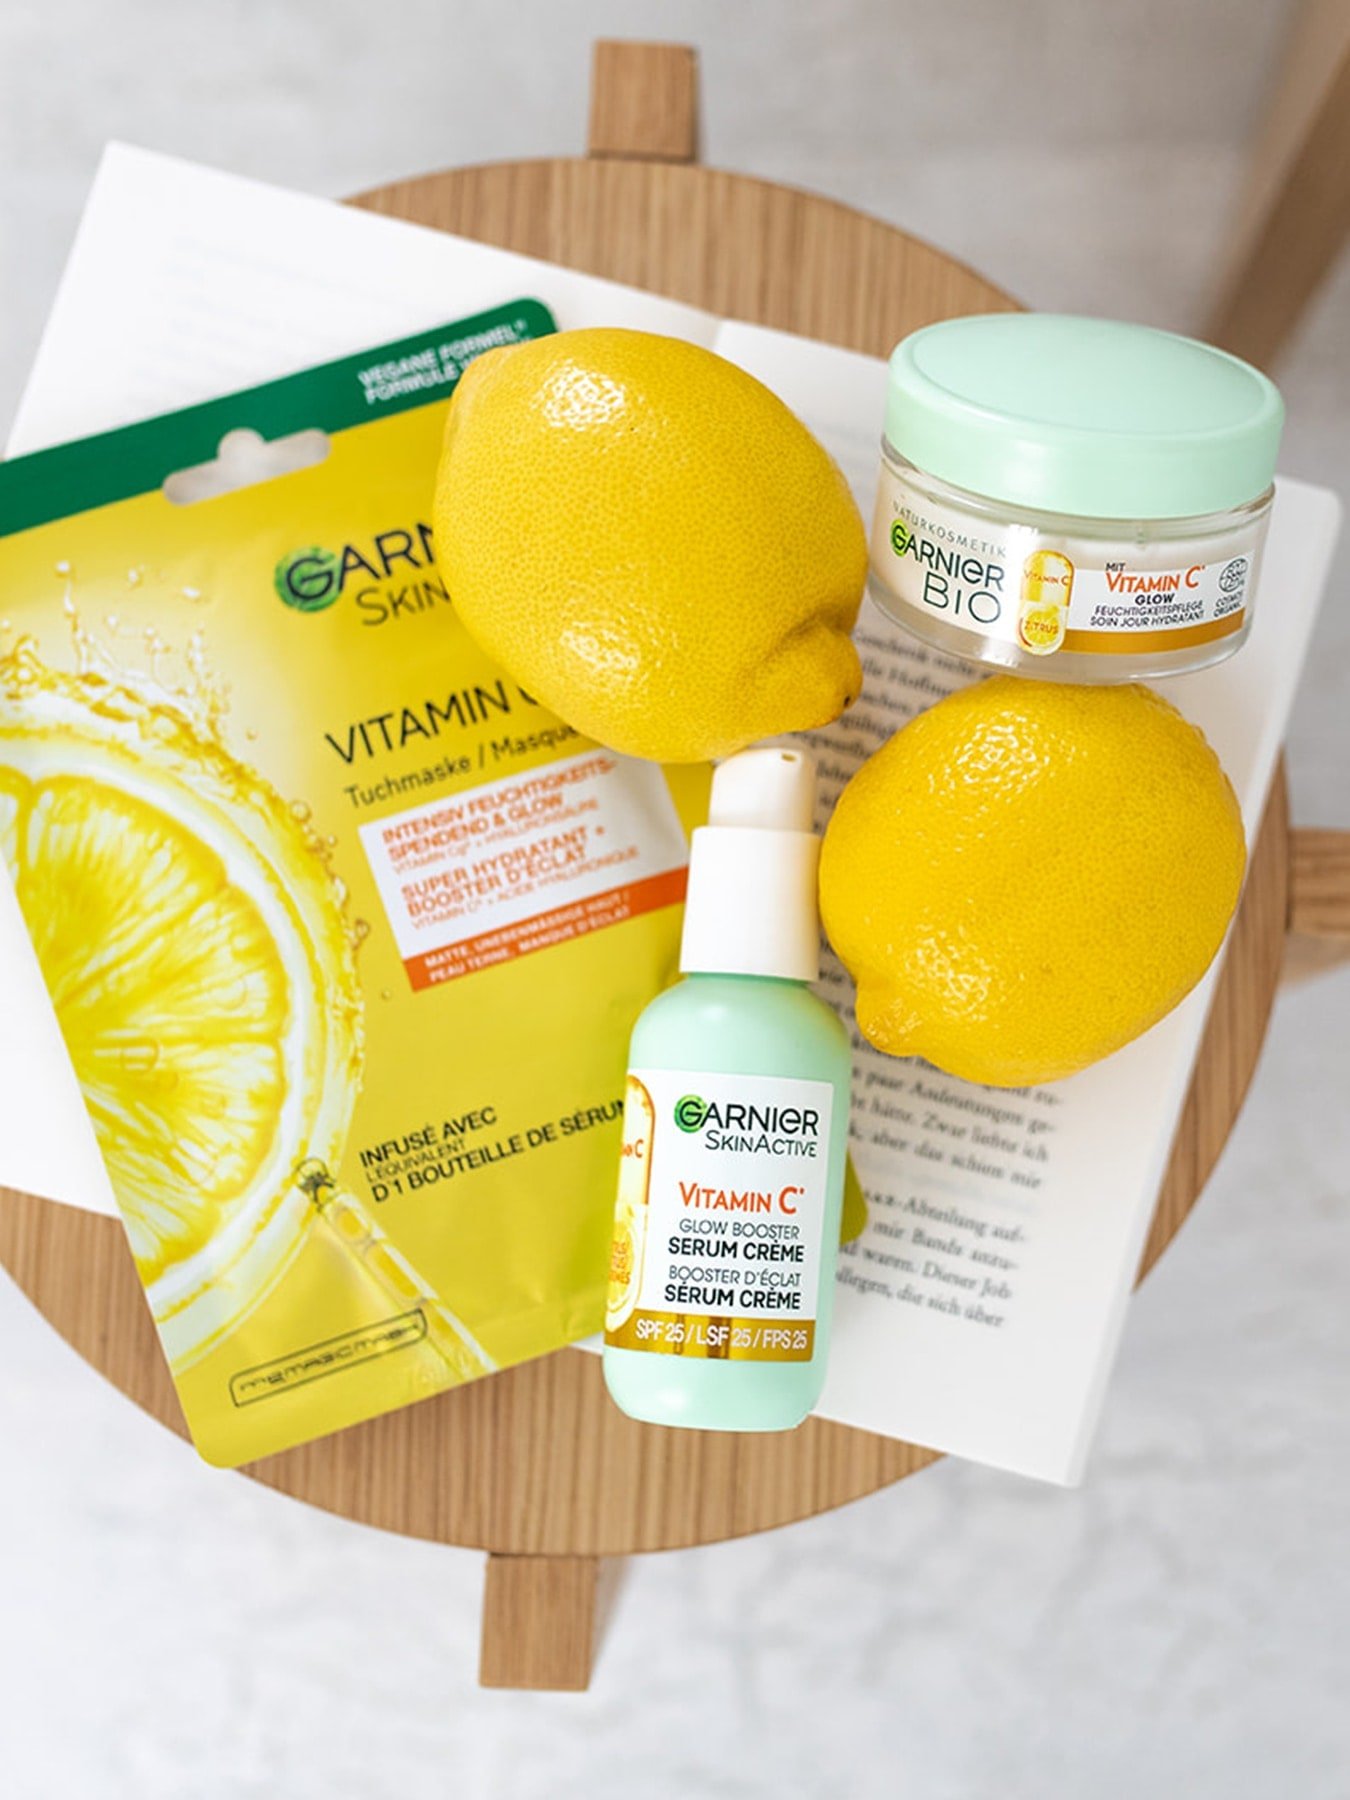 Verschiedene Garnier Vitamin C Feuchtigkeitspflegeprodukte liegen mit Zitronen auf einem kleinen Hocker